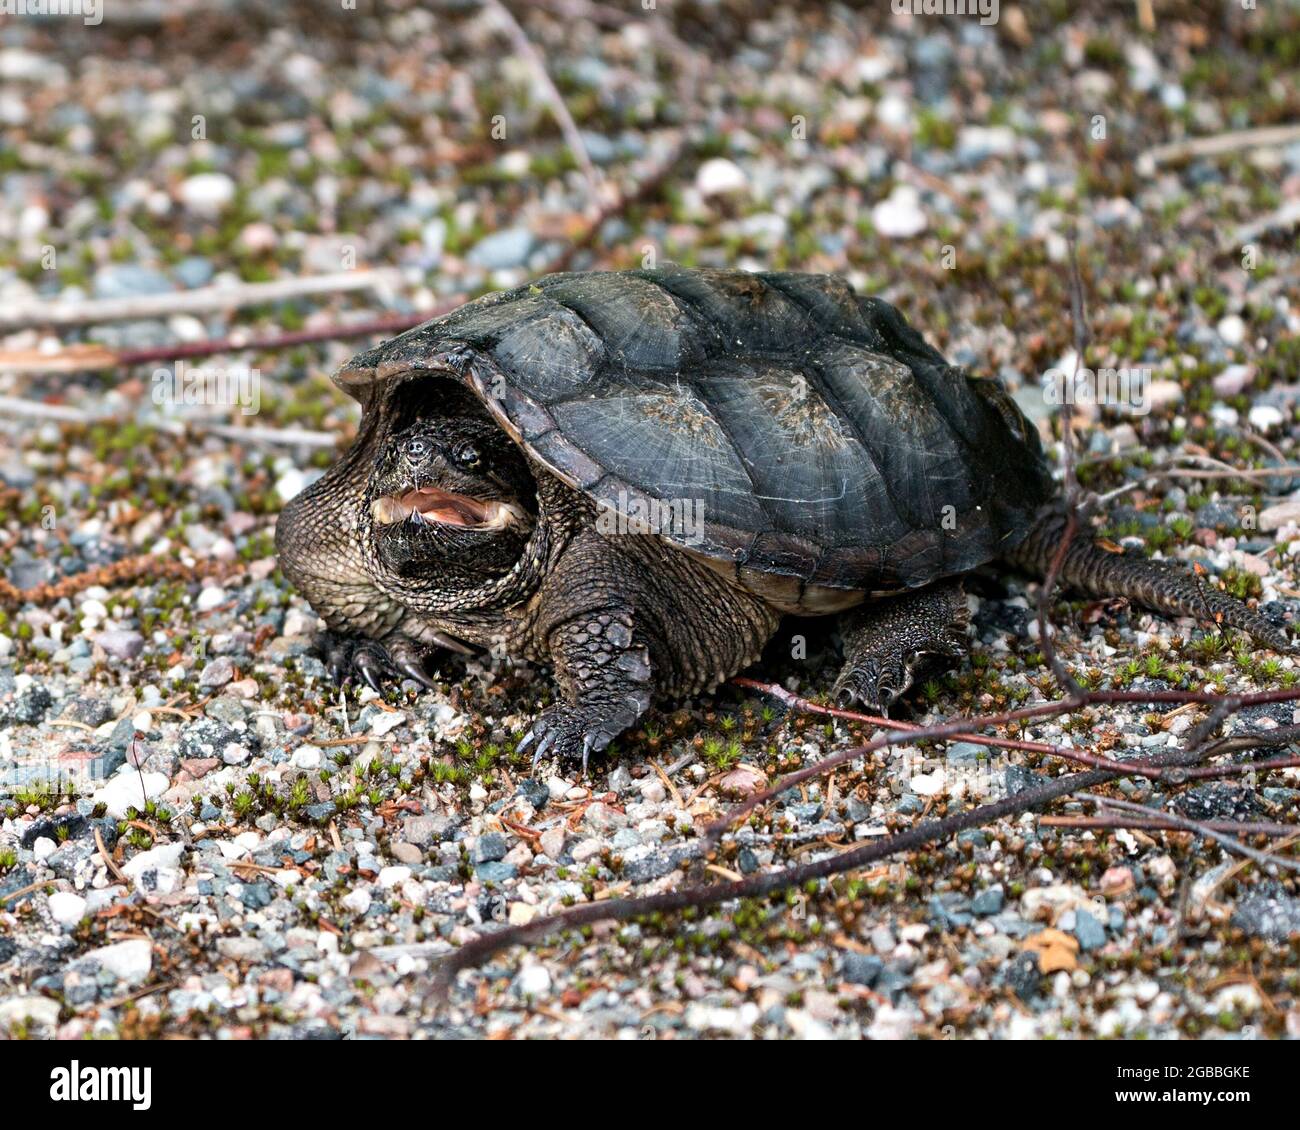 Schnappschildkröte Nahaufnahme Profilansicht Wandern auf Kies in seiner Umgebung und Lebensraum mit Schildkrötenmuschel und offenem Mund. Schildkrötenbild. Stockfoto